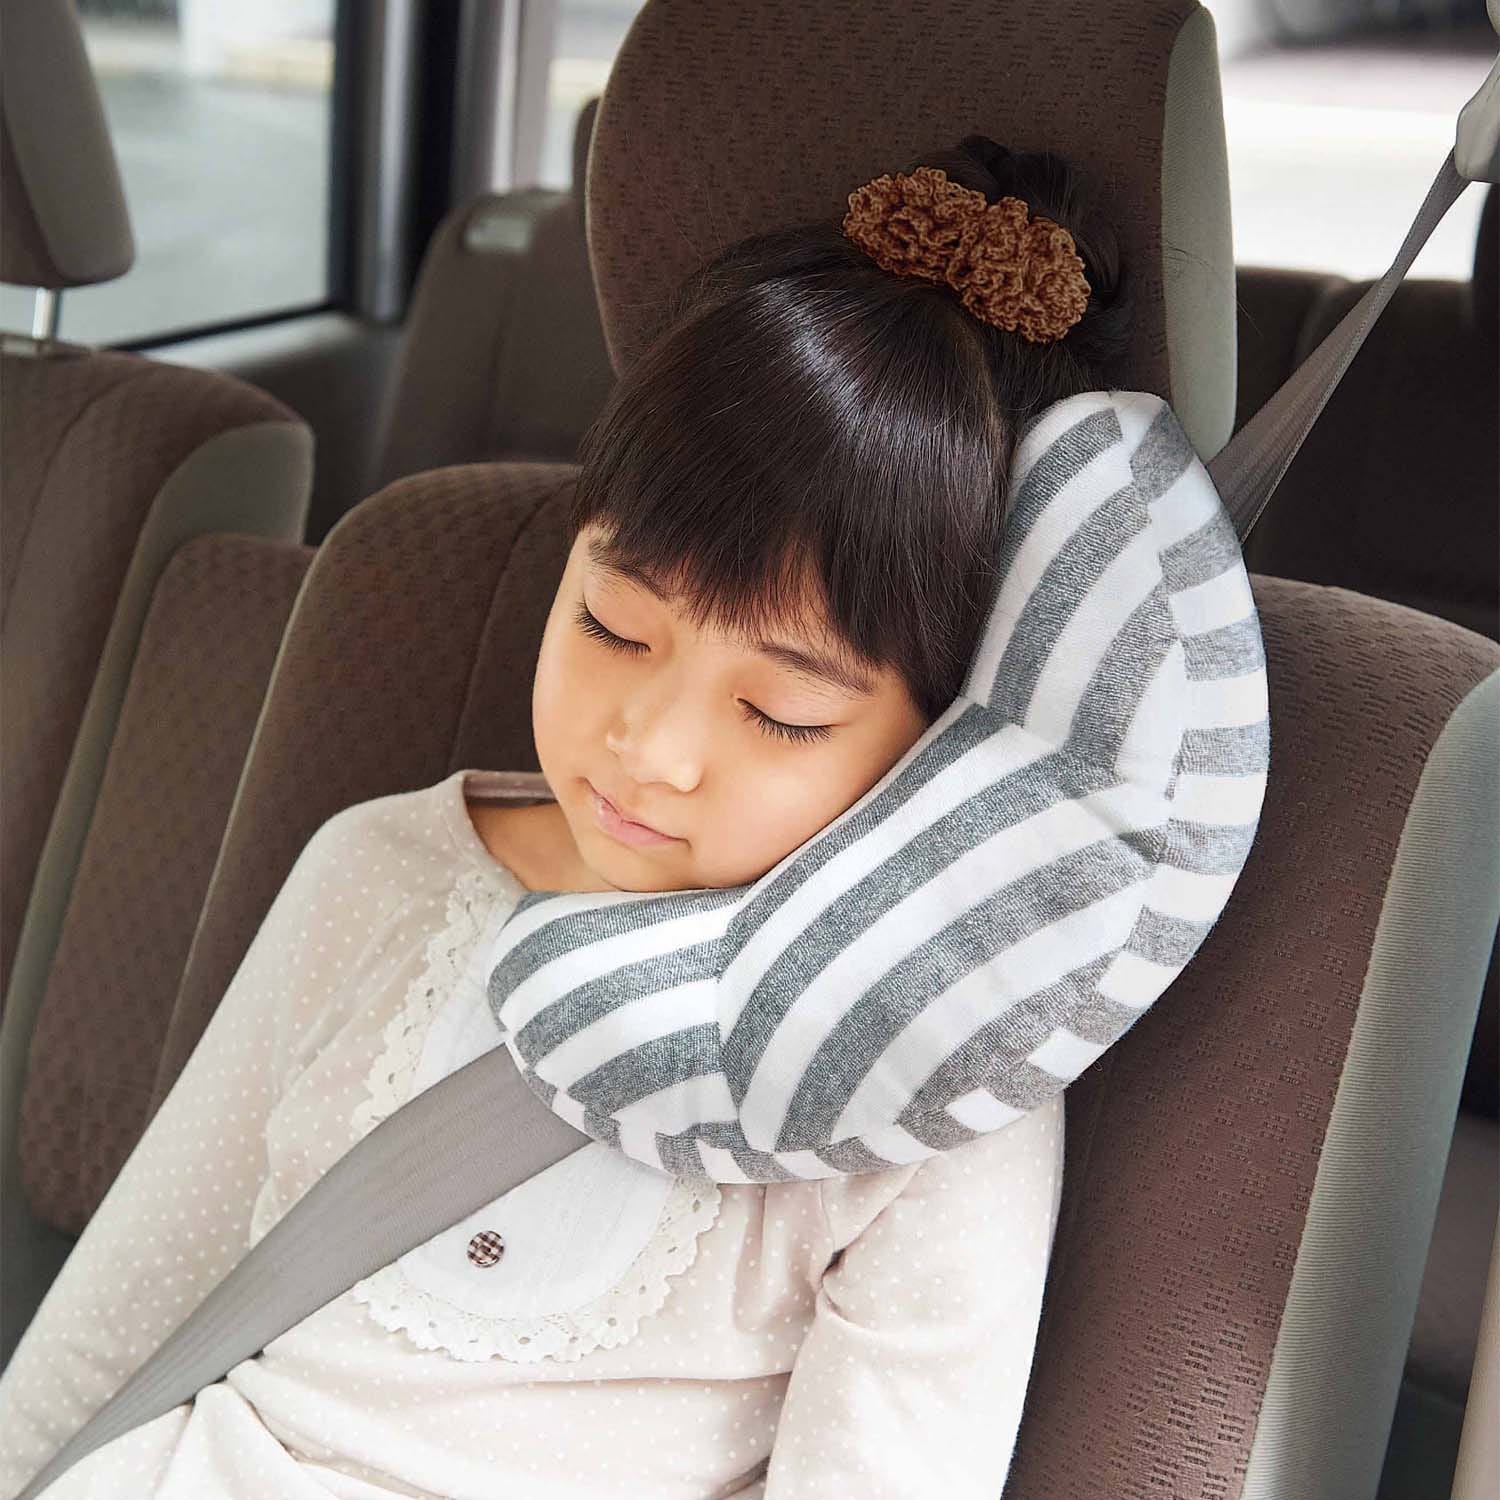 シートベルト用ふかふかクッション【ドライブ中お子さまが眠ったら】